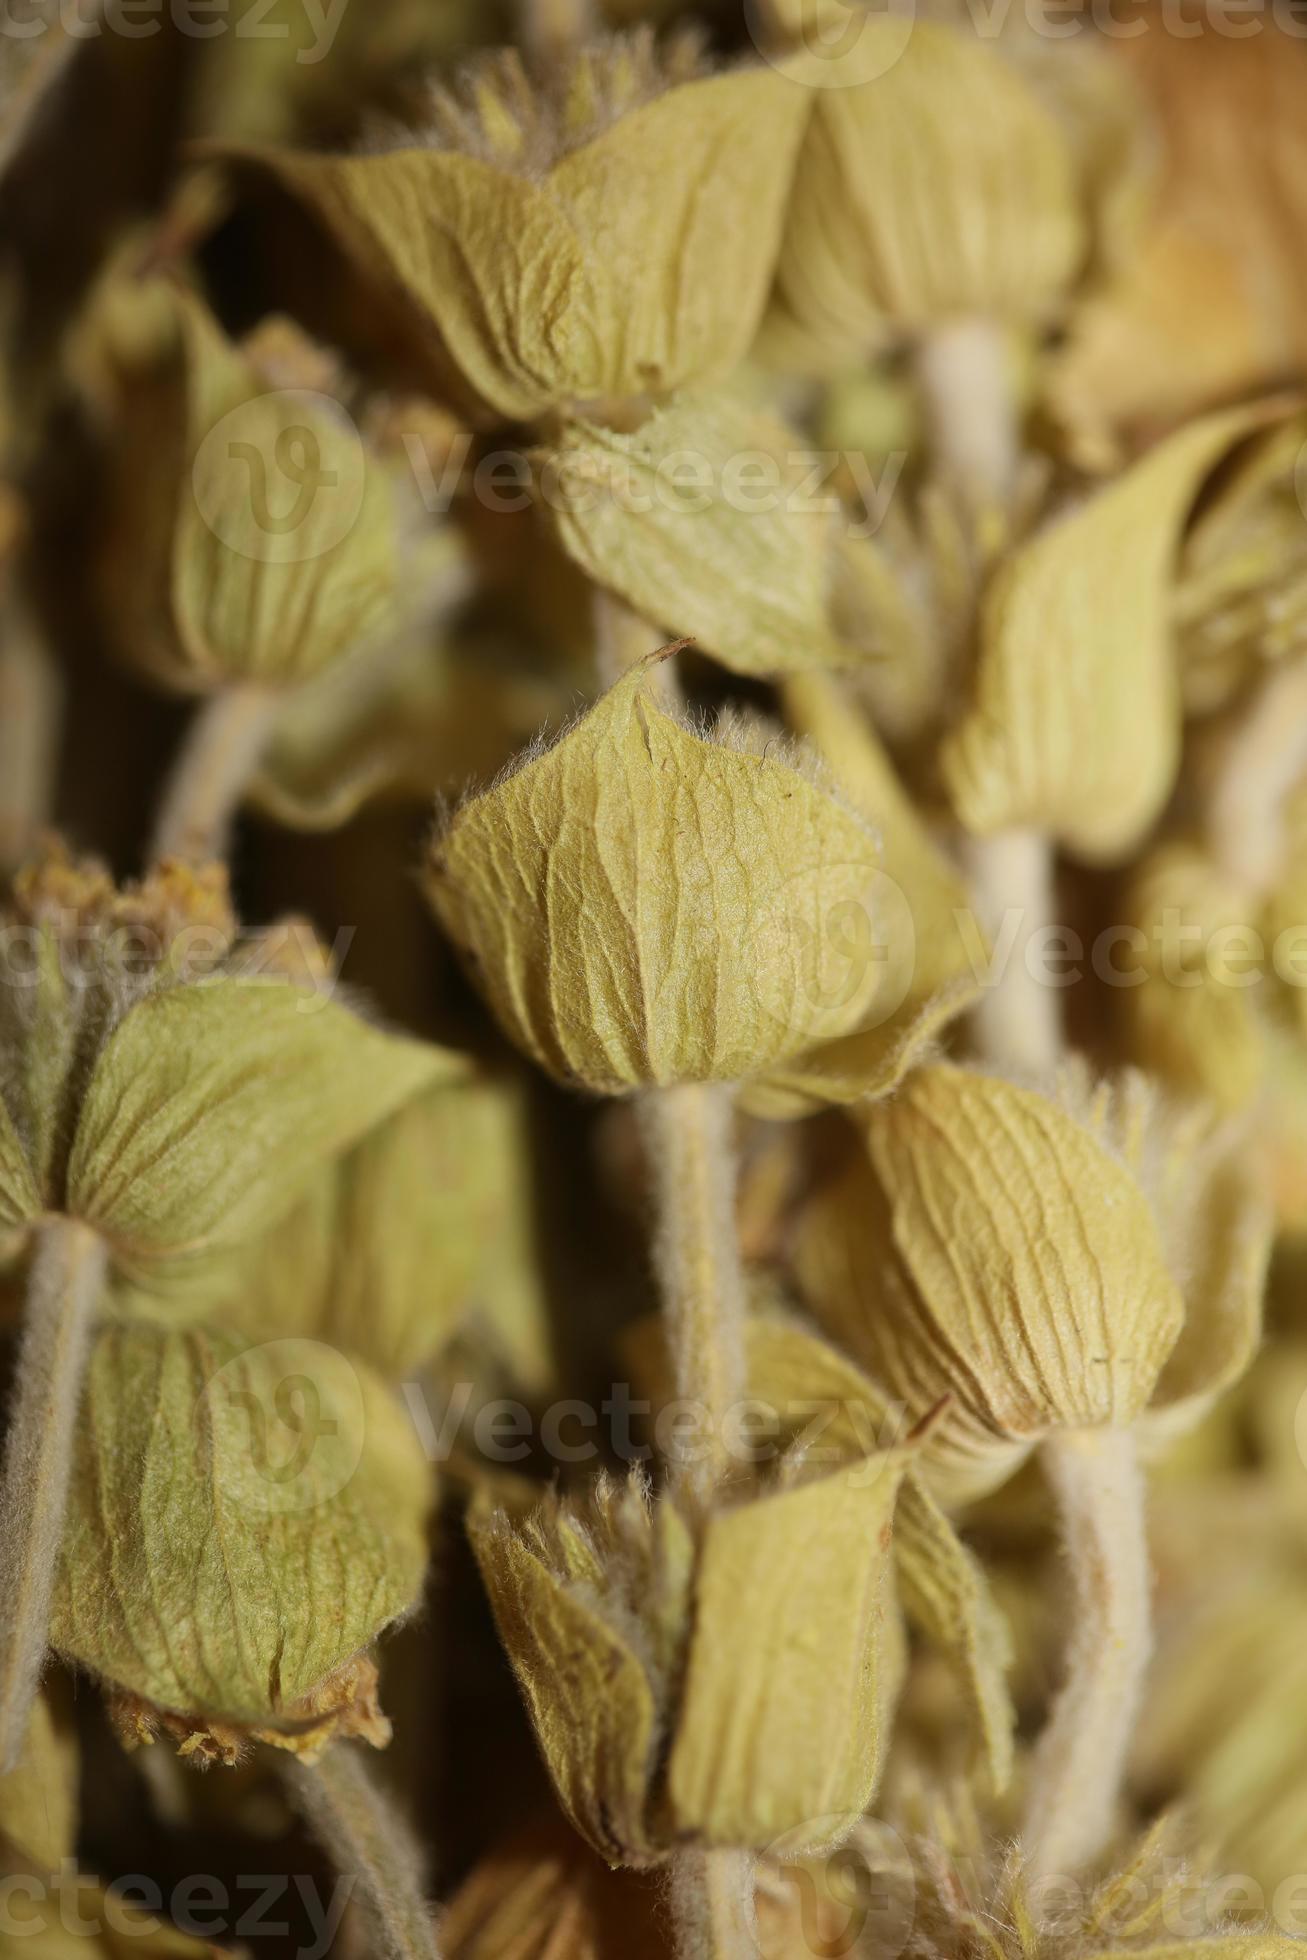 wilde bergthee close-up achtergrond sideris familie lamiaceae hoge kwaliteit groot formaat prints foto